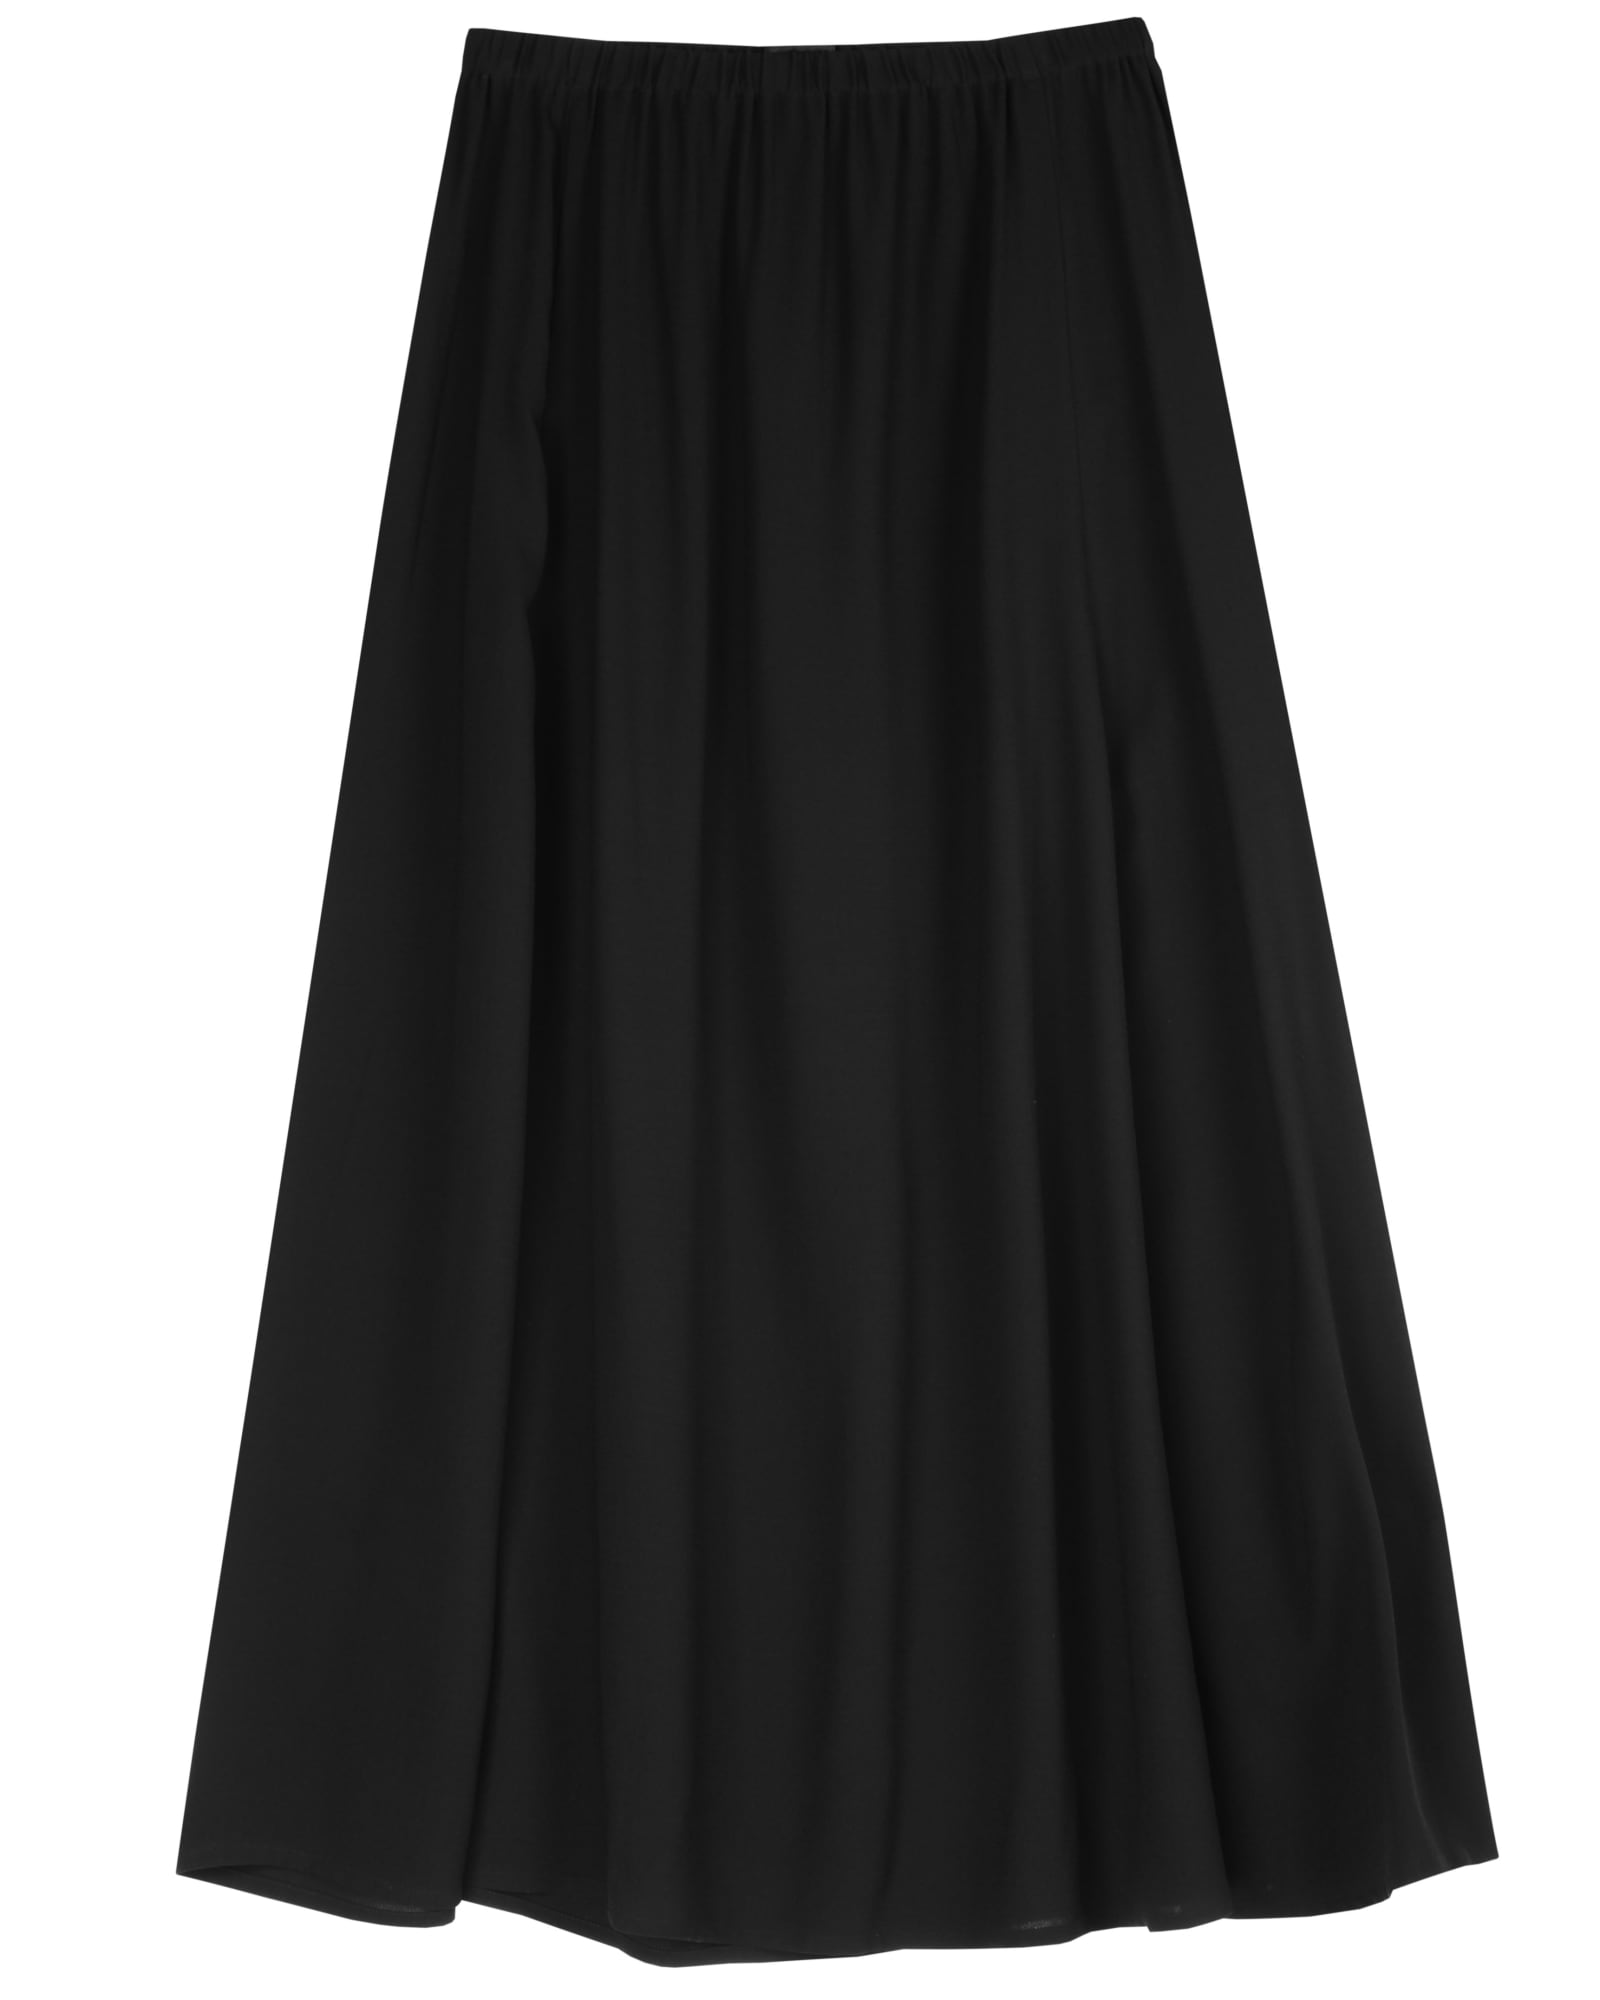 Used Silk Georgette Crepe Skirt Black | EILEEN FISHER RENEW